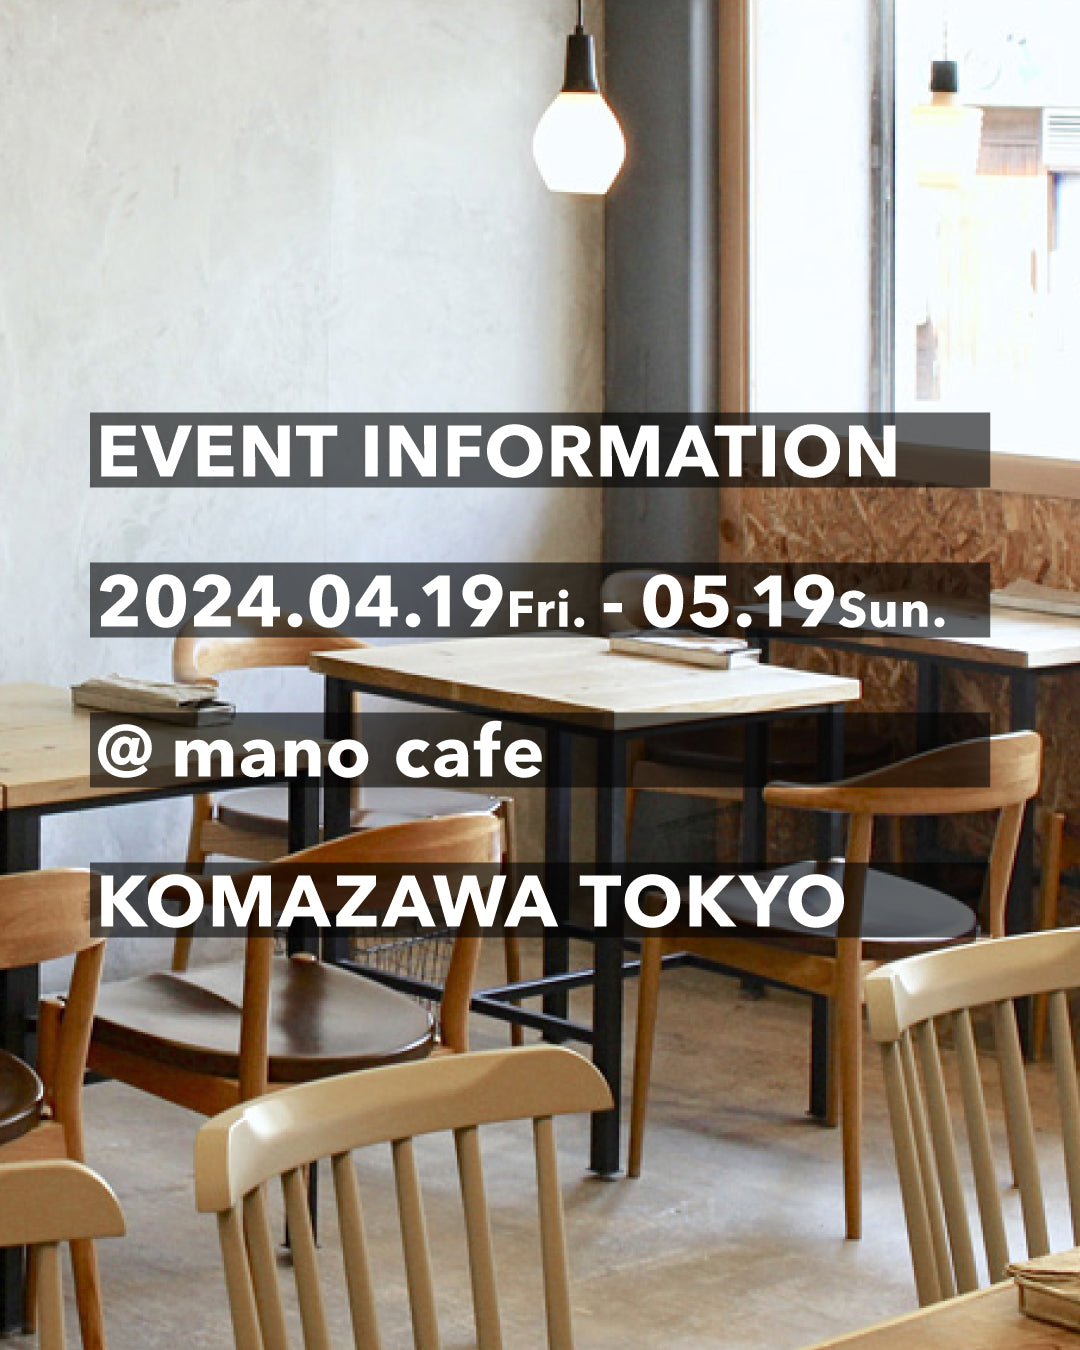 4/20-5/19 東京・駒沢 mano cafeにて、KAIHŌ SOCKS期間限定販売